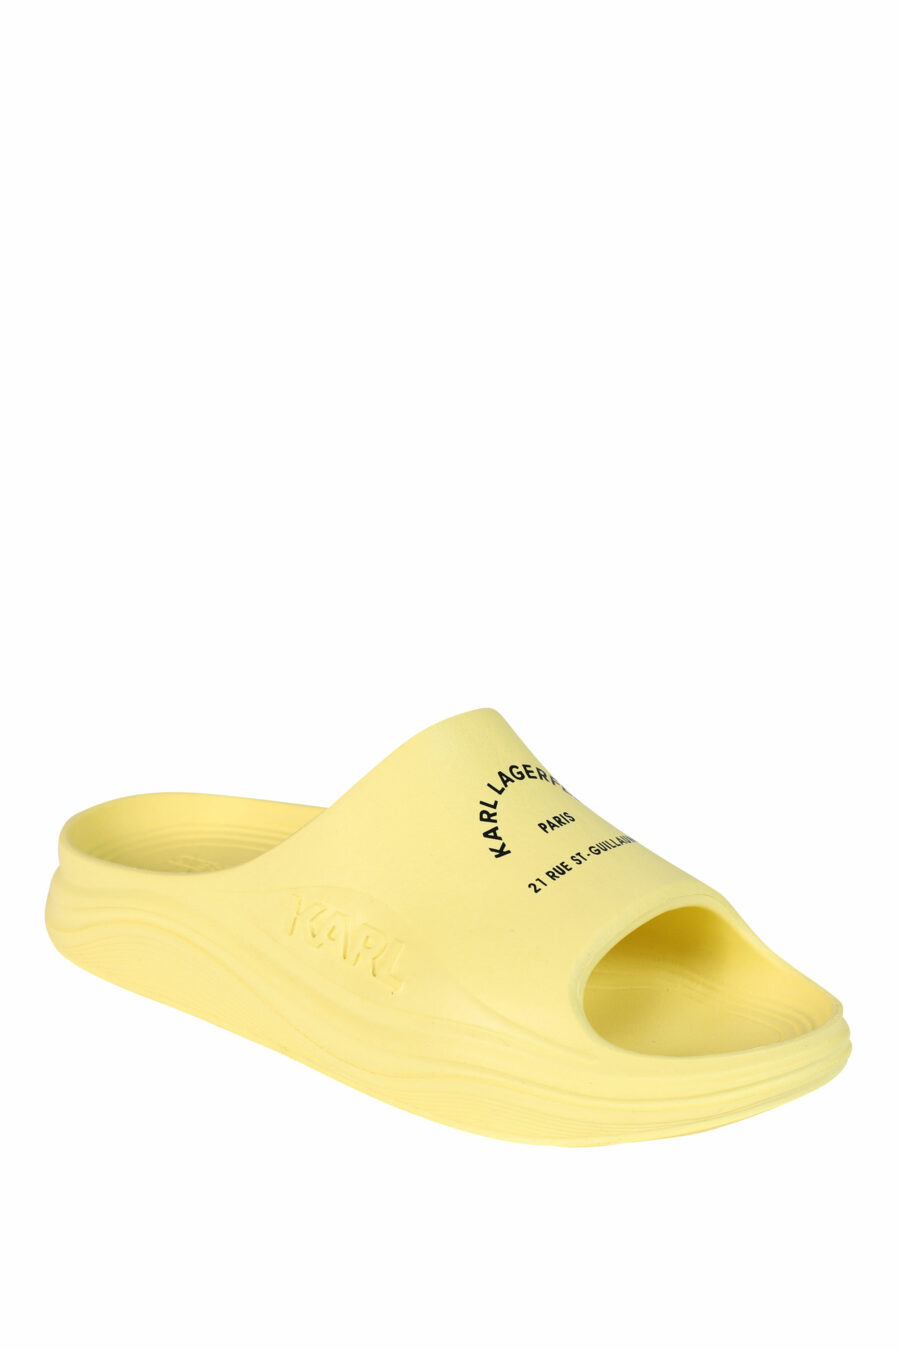 Sandálias "skoona" amarelas com logótipo - 5059529246012 2